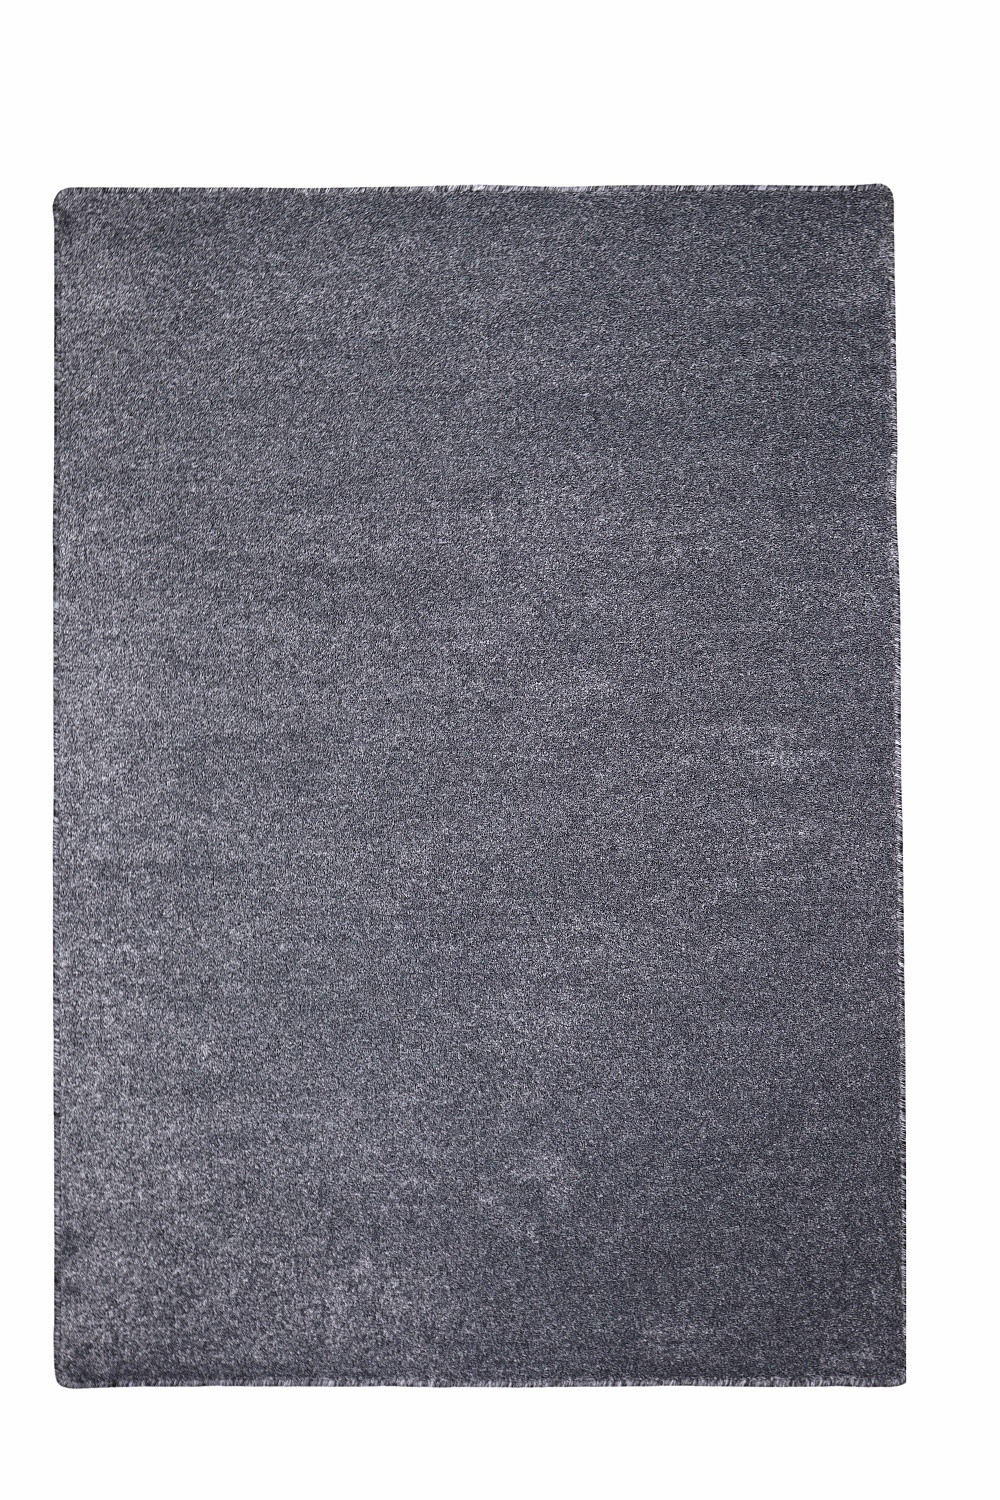 Levně Vopi koberce Kusový koberec Apollo Soft antra - 160x230 cm